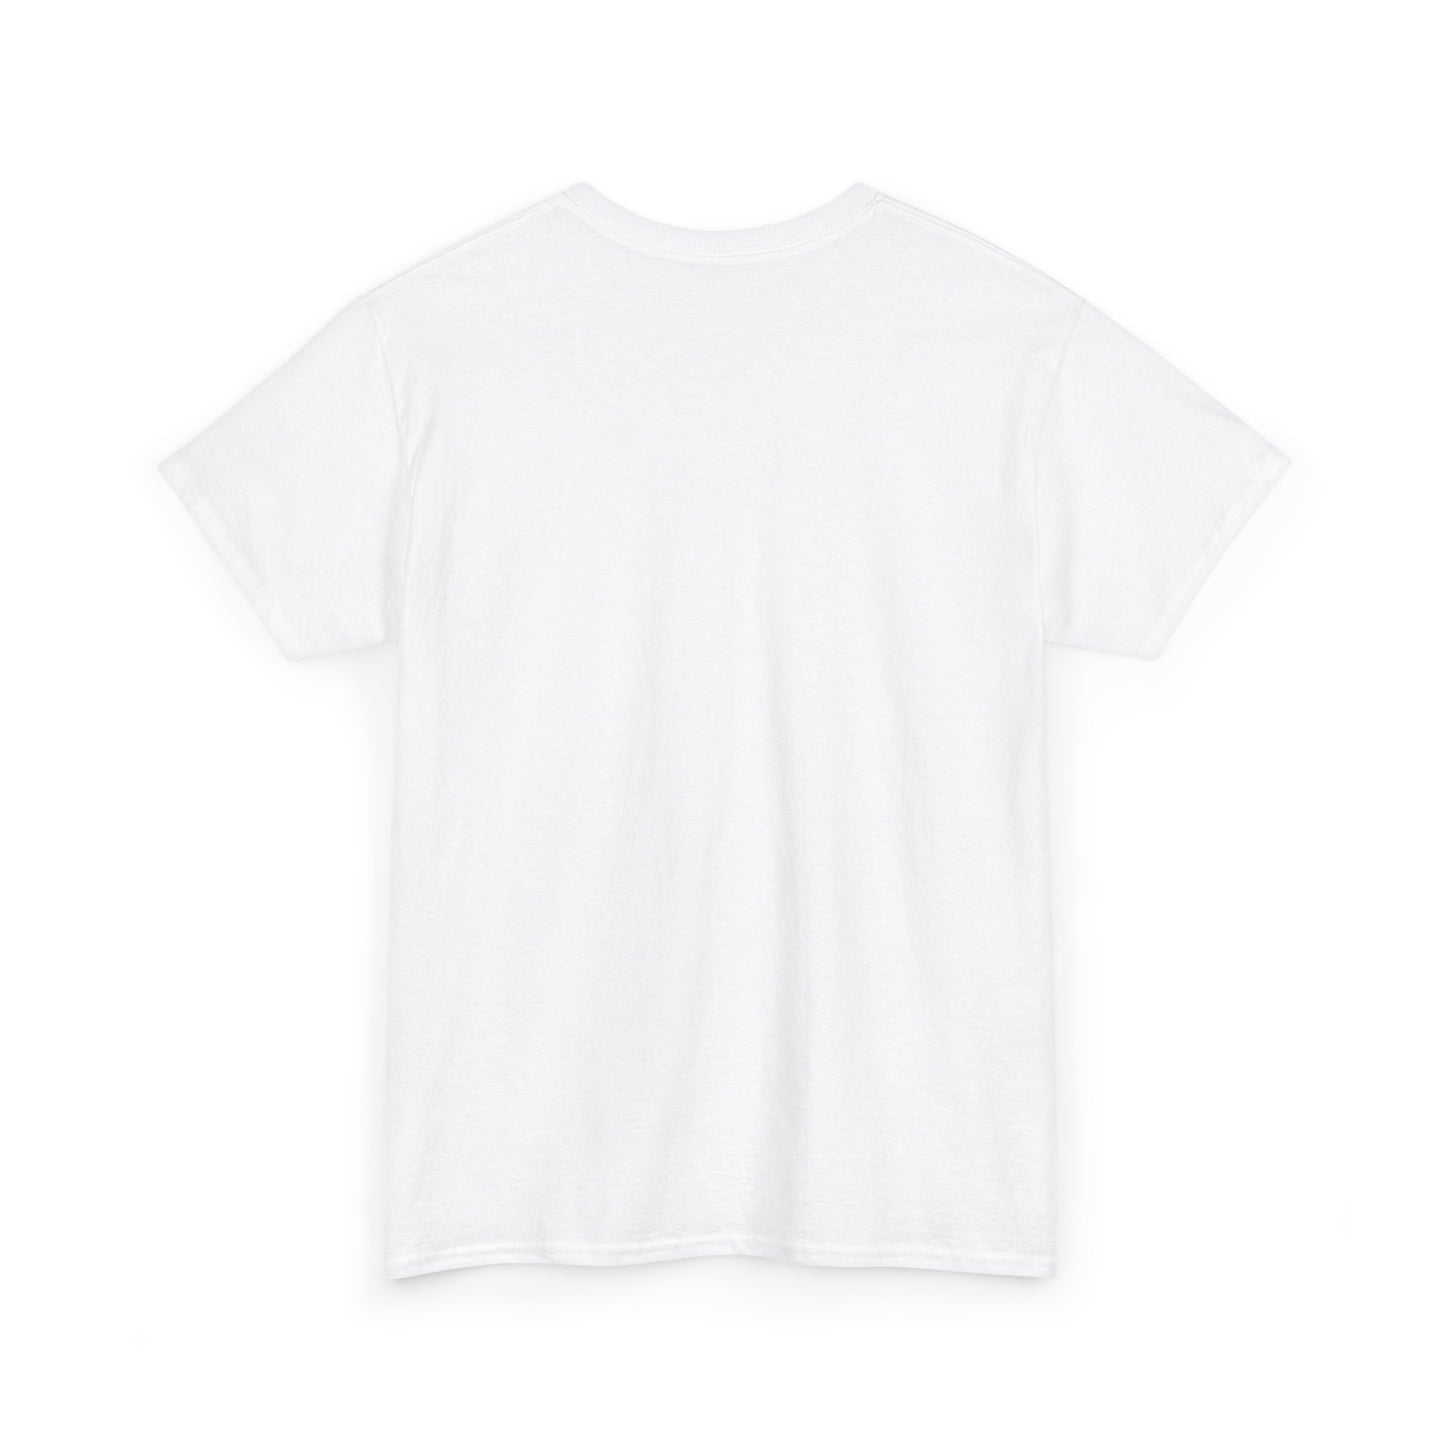 ACID NAILS Unisex T-shirt